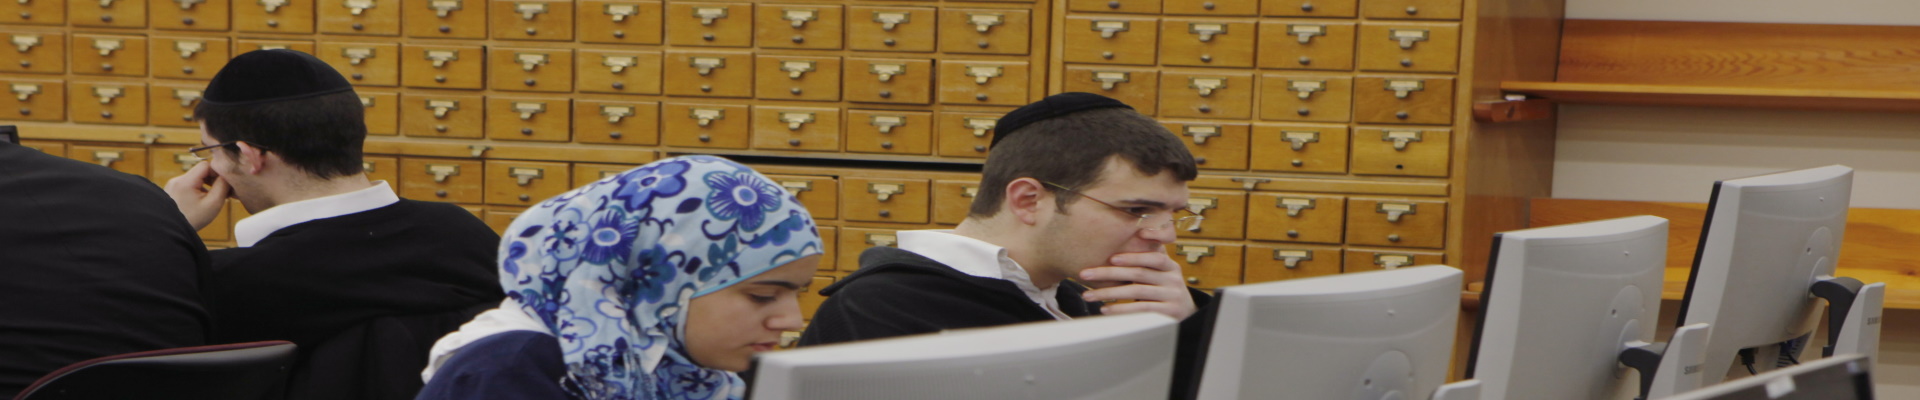 أرشىيف نت: أرشيف الإنترنت الإسرائيلي